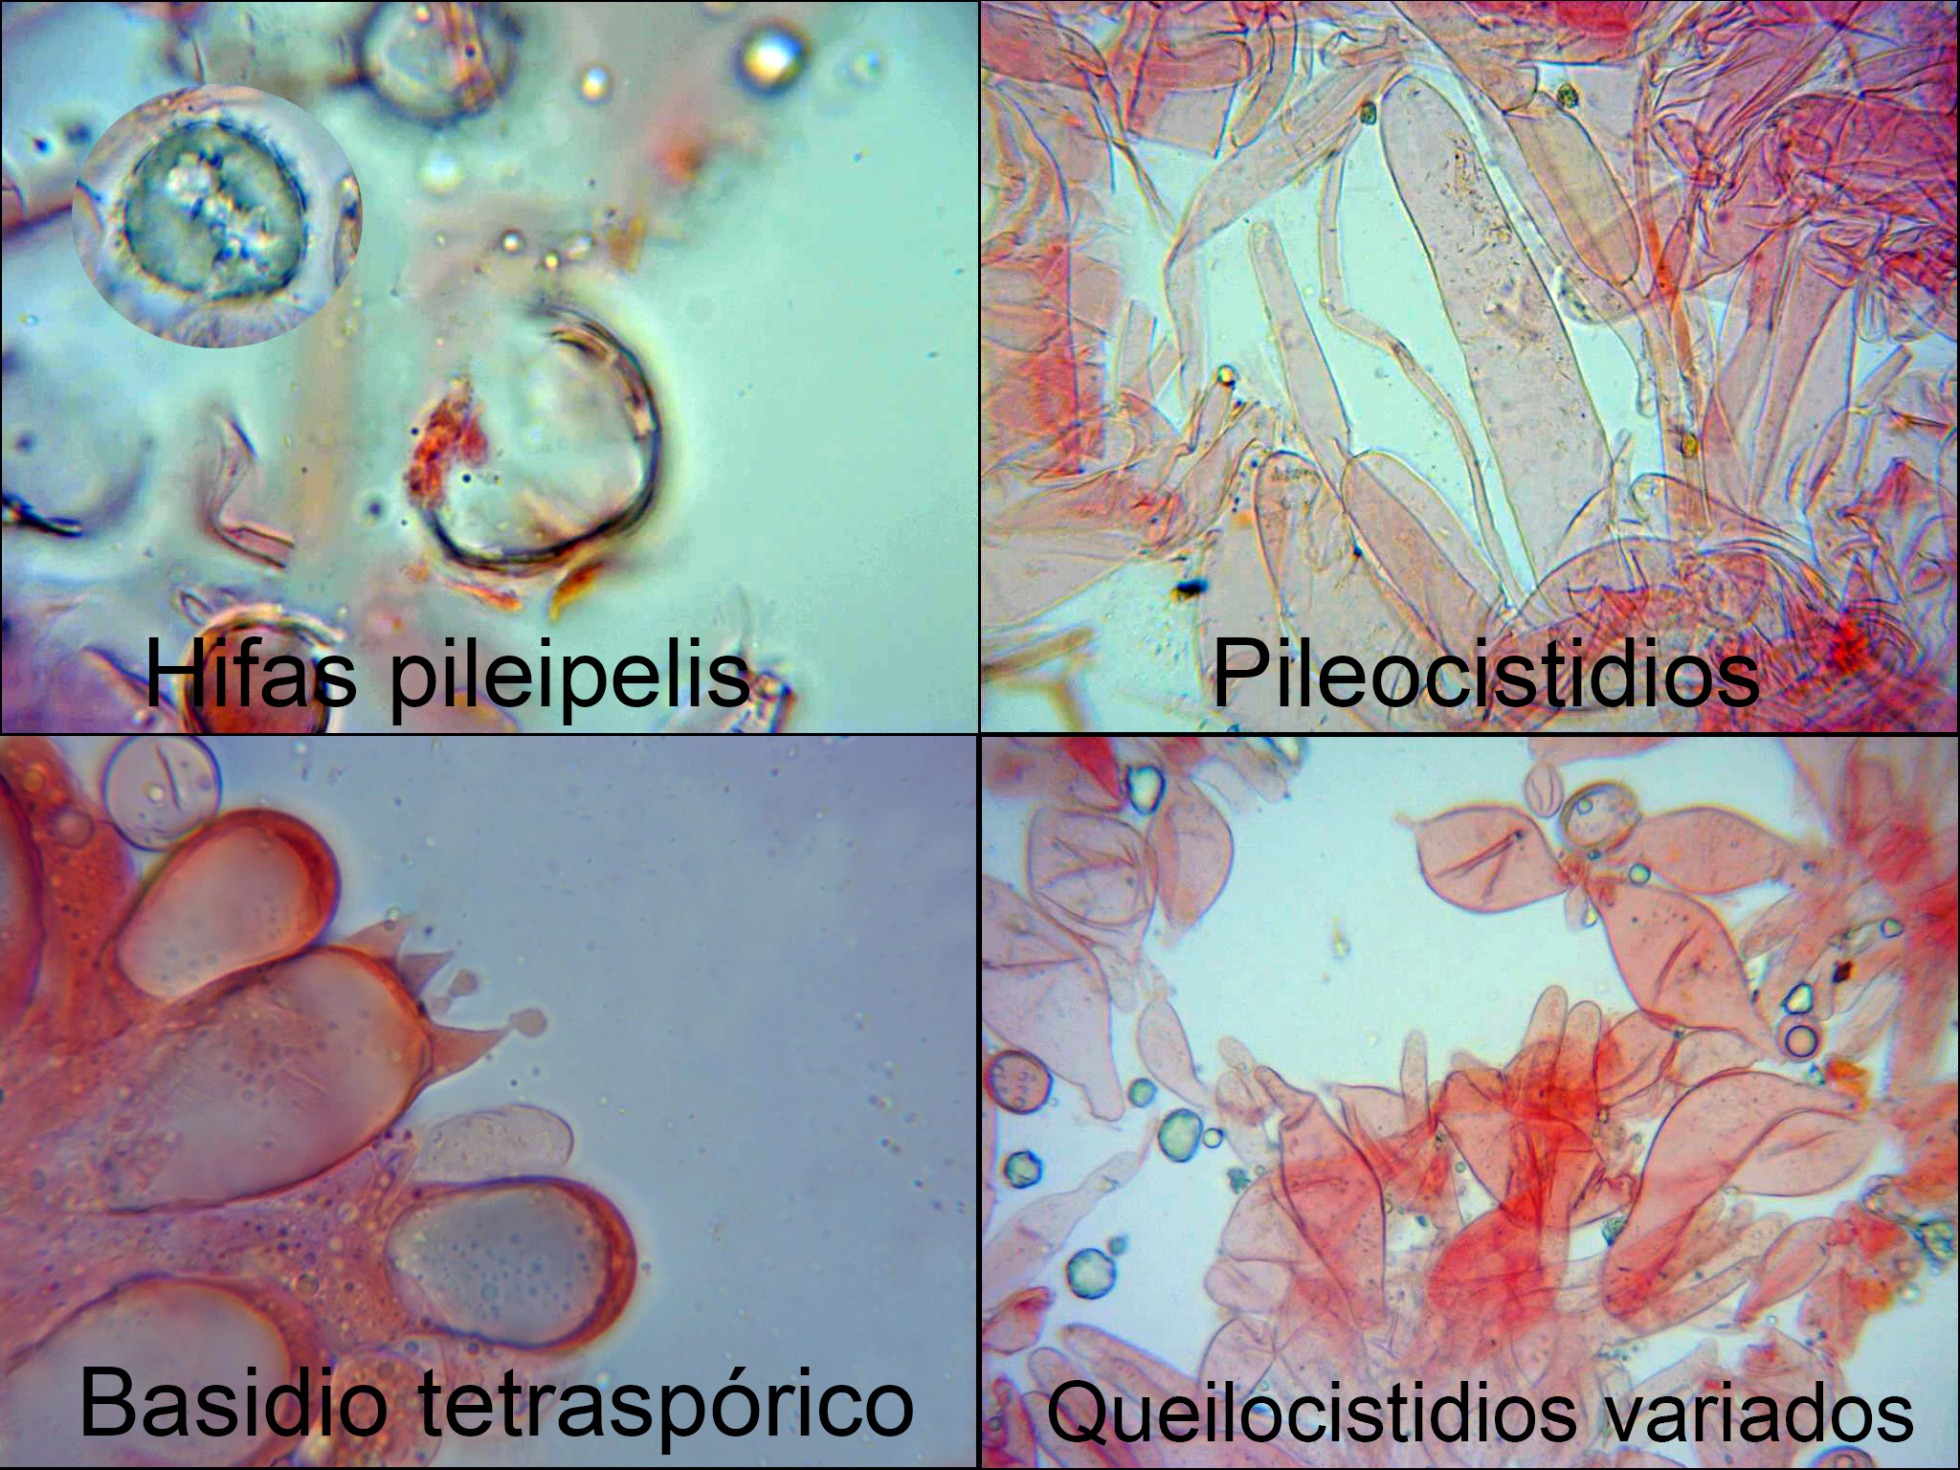 Oudemansiellaplatensism_2021-09-01.jpg